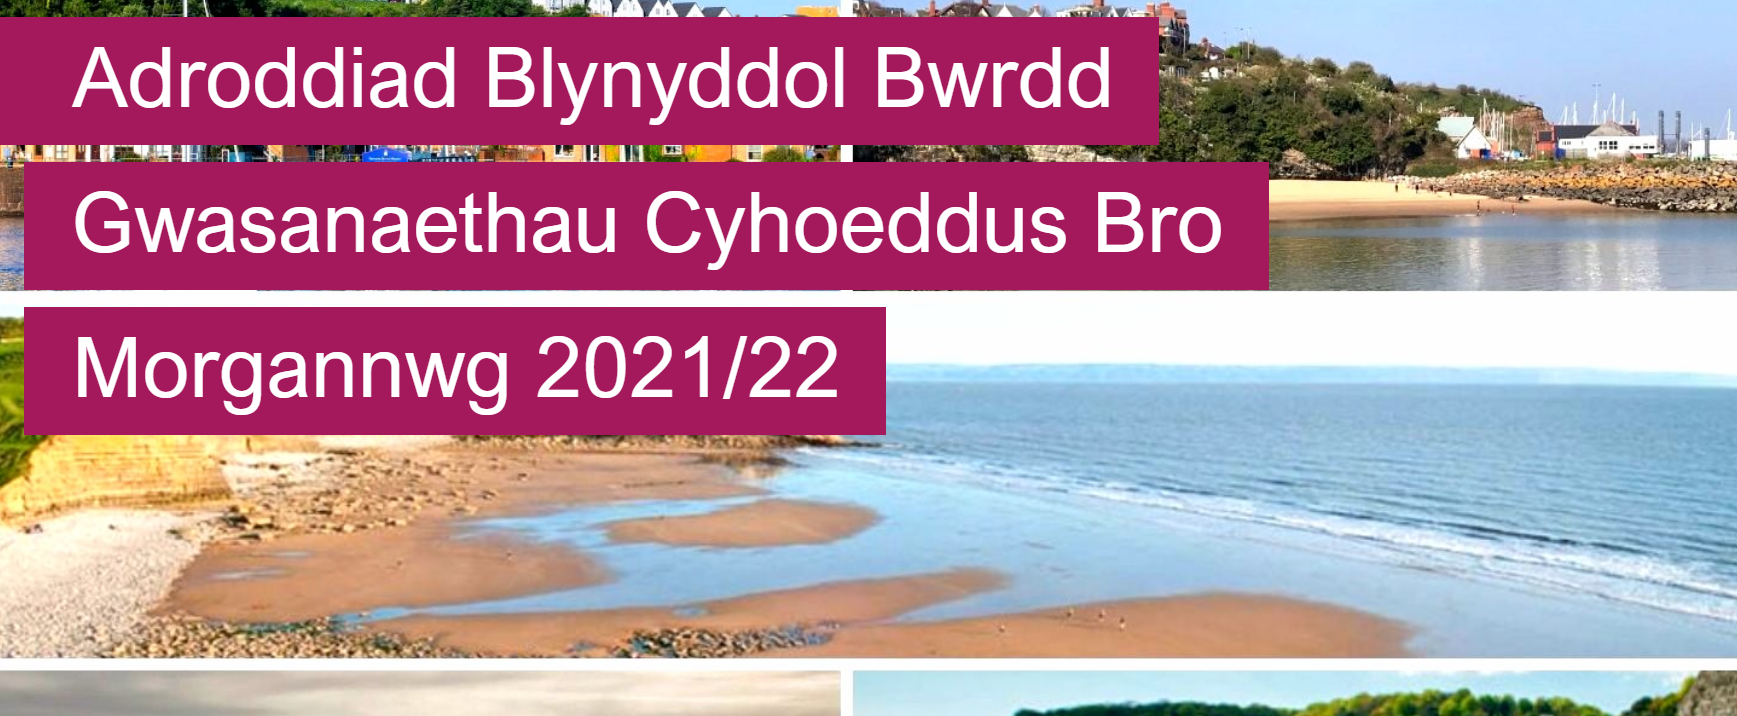 PSB AR Welsh 2021-22